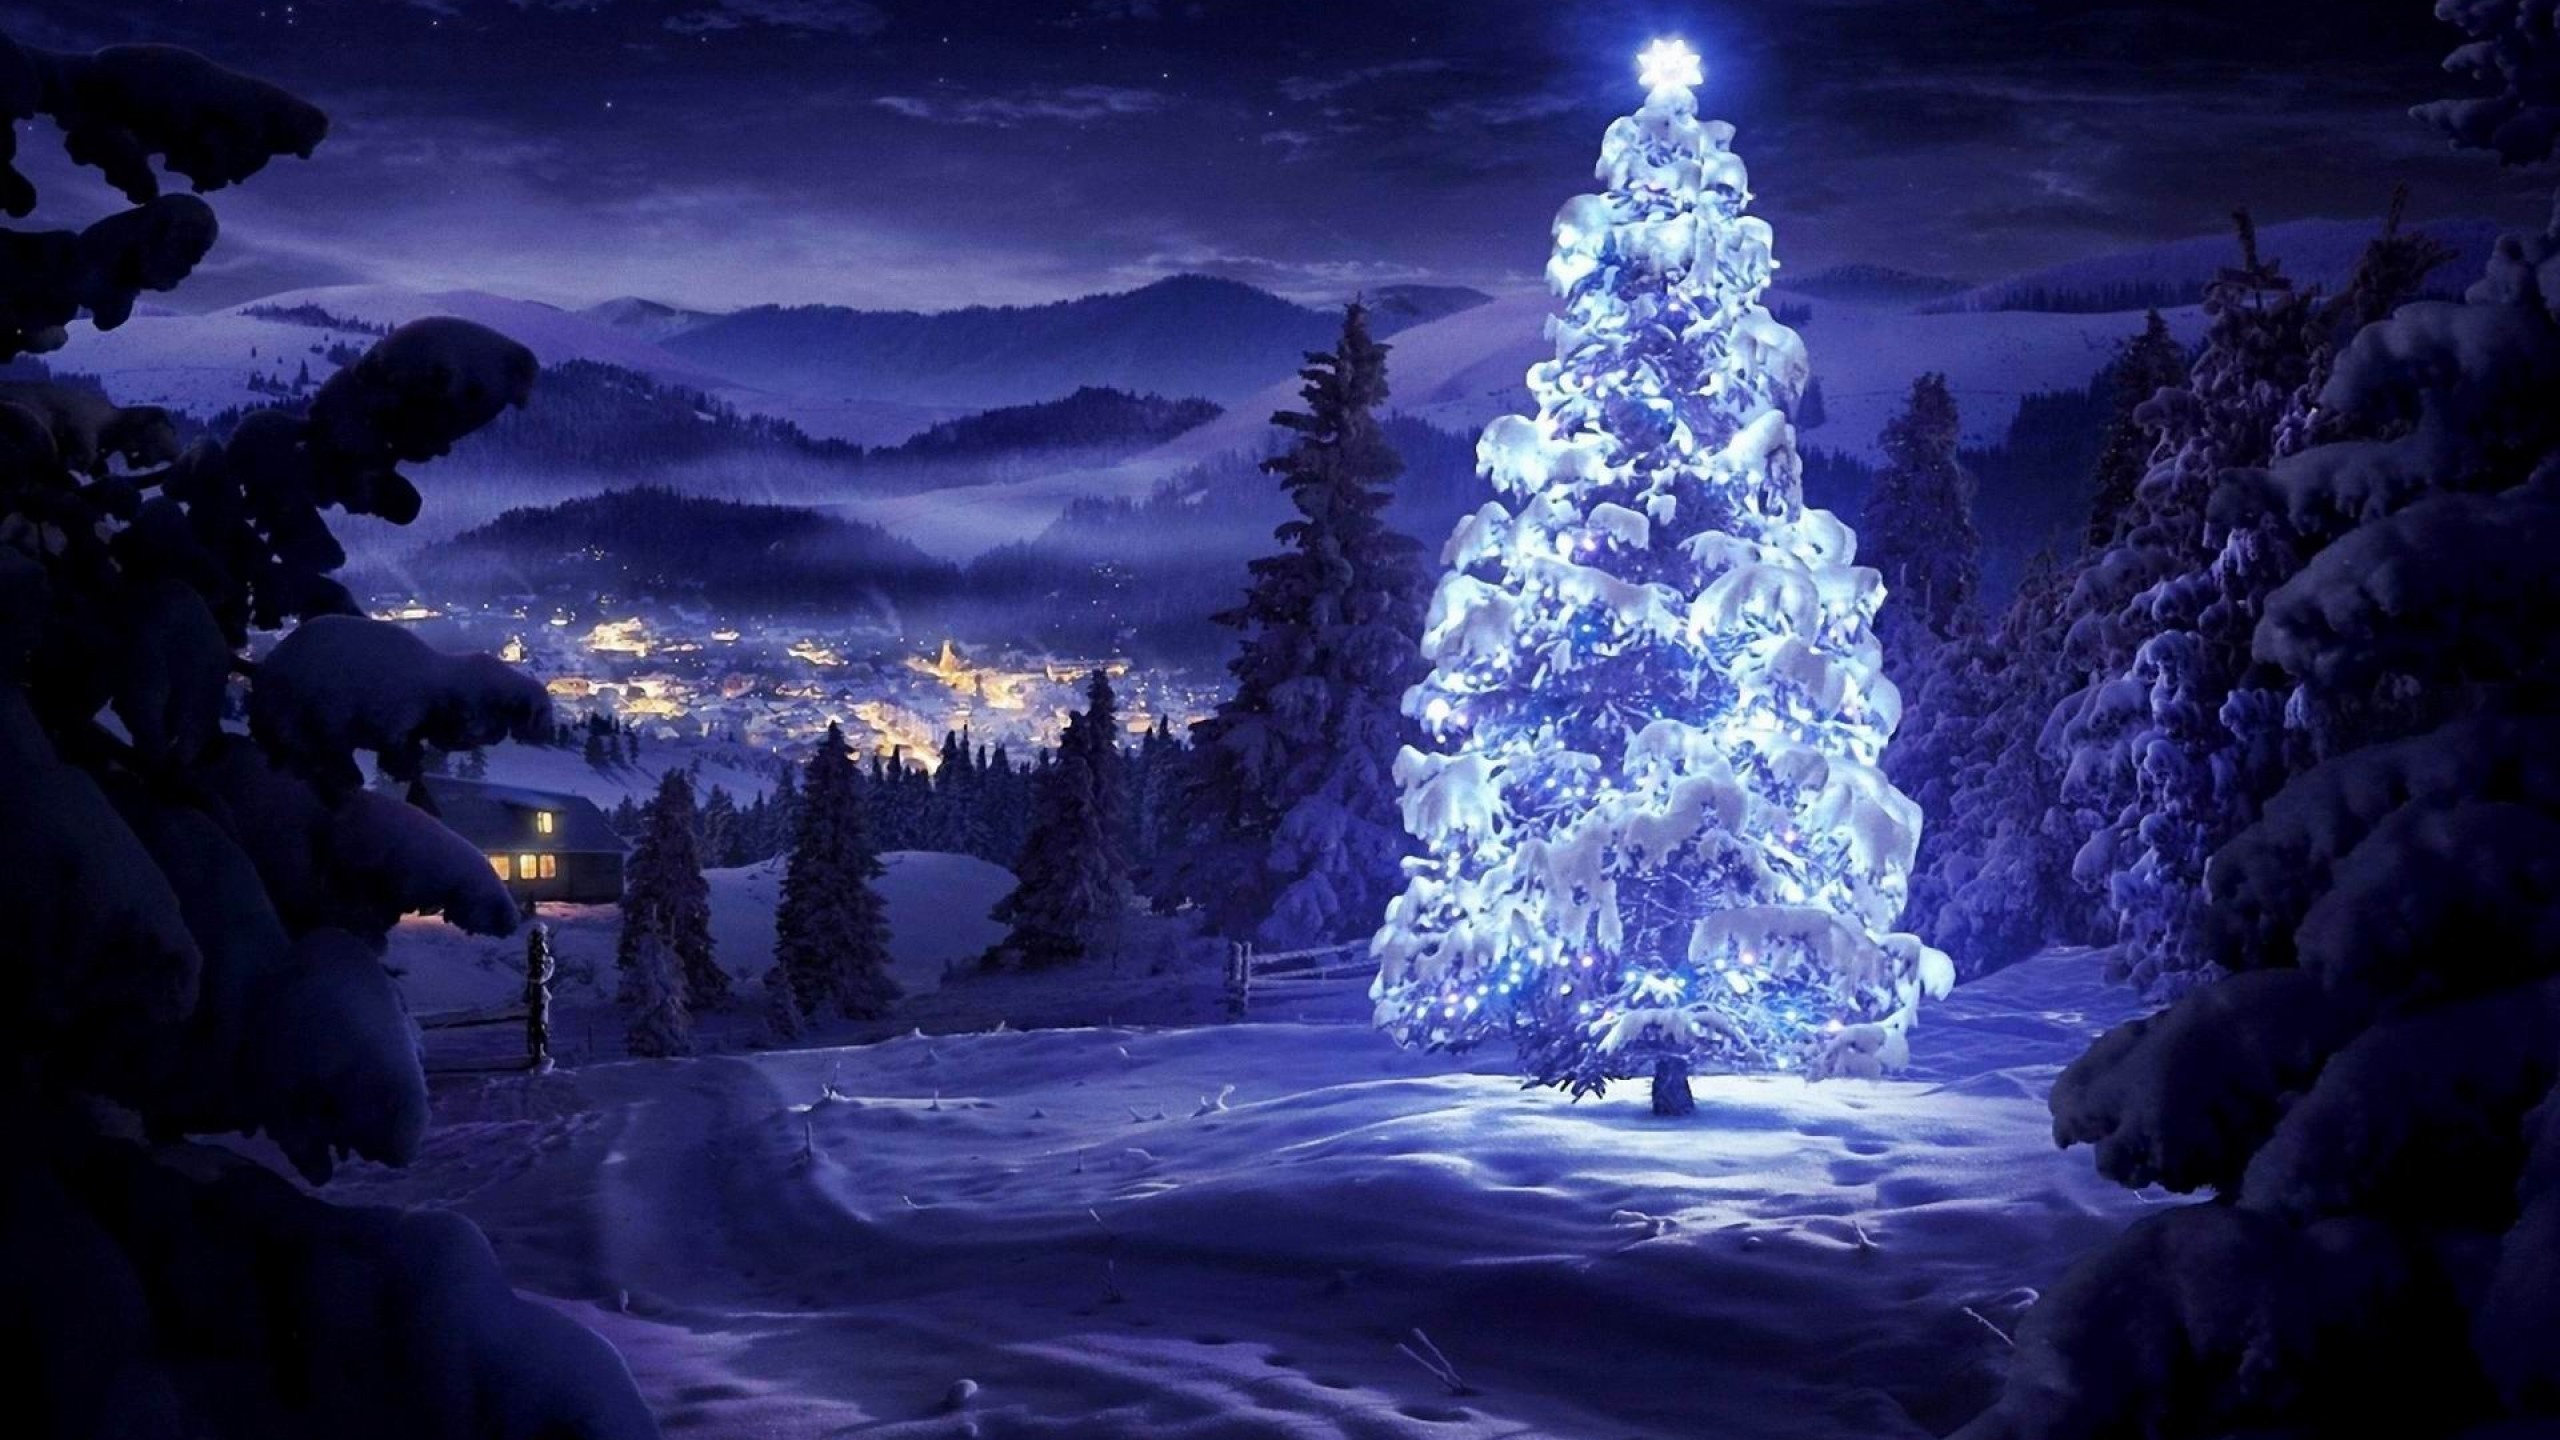 Đêm Giáng Sinh là ngày lễ quan trọng nhất của mùa đông. Hãy cùng trải nghiệm những khoảnh khắc đầy tình cảm và ấm áp của đêm Noel qua những tấm hình ảnh lung linh.